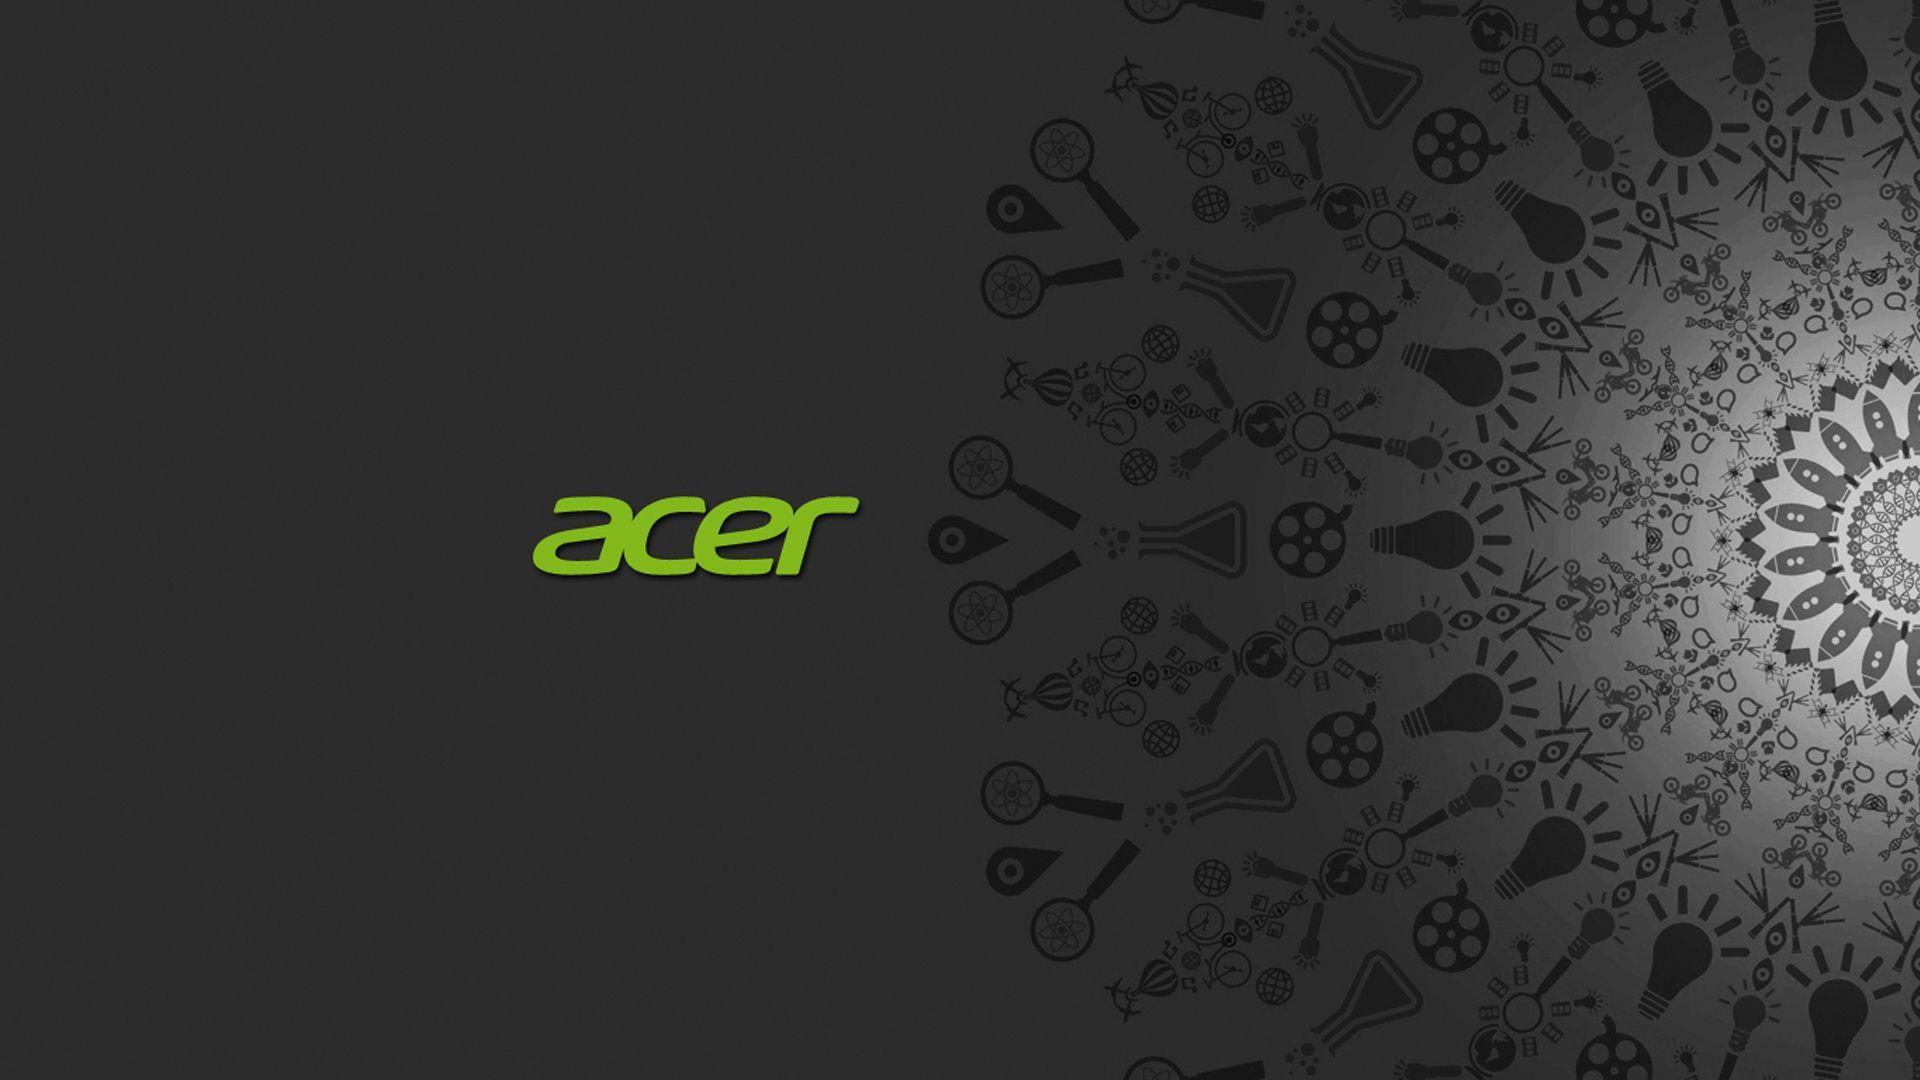 Acer Background